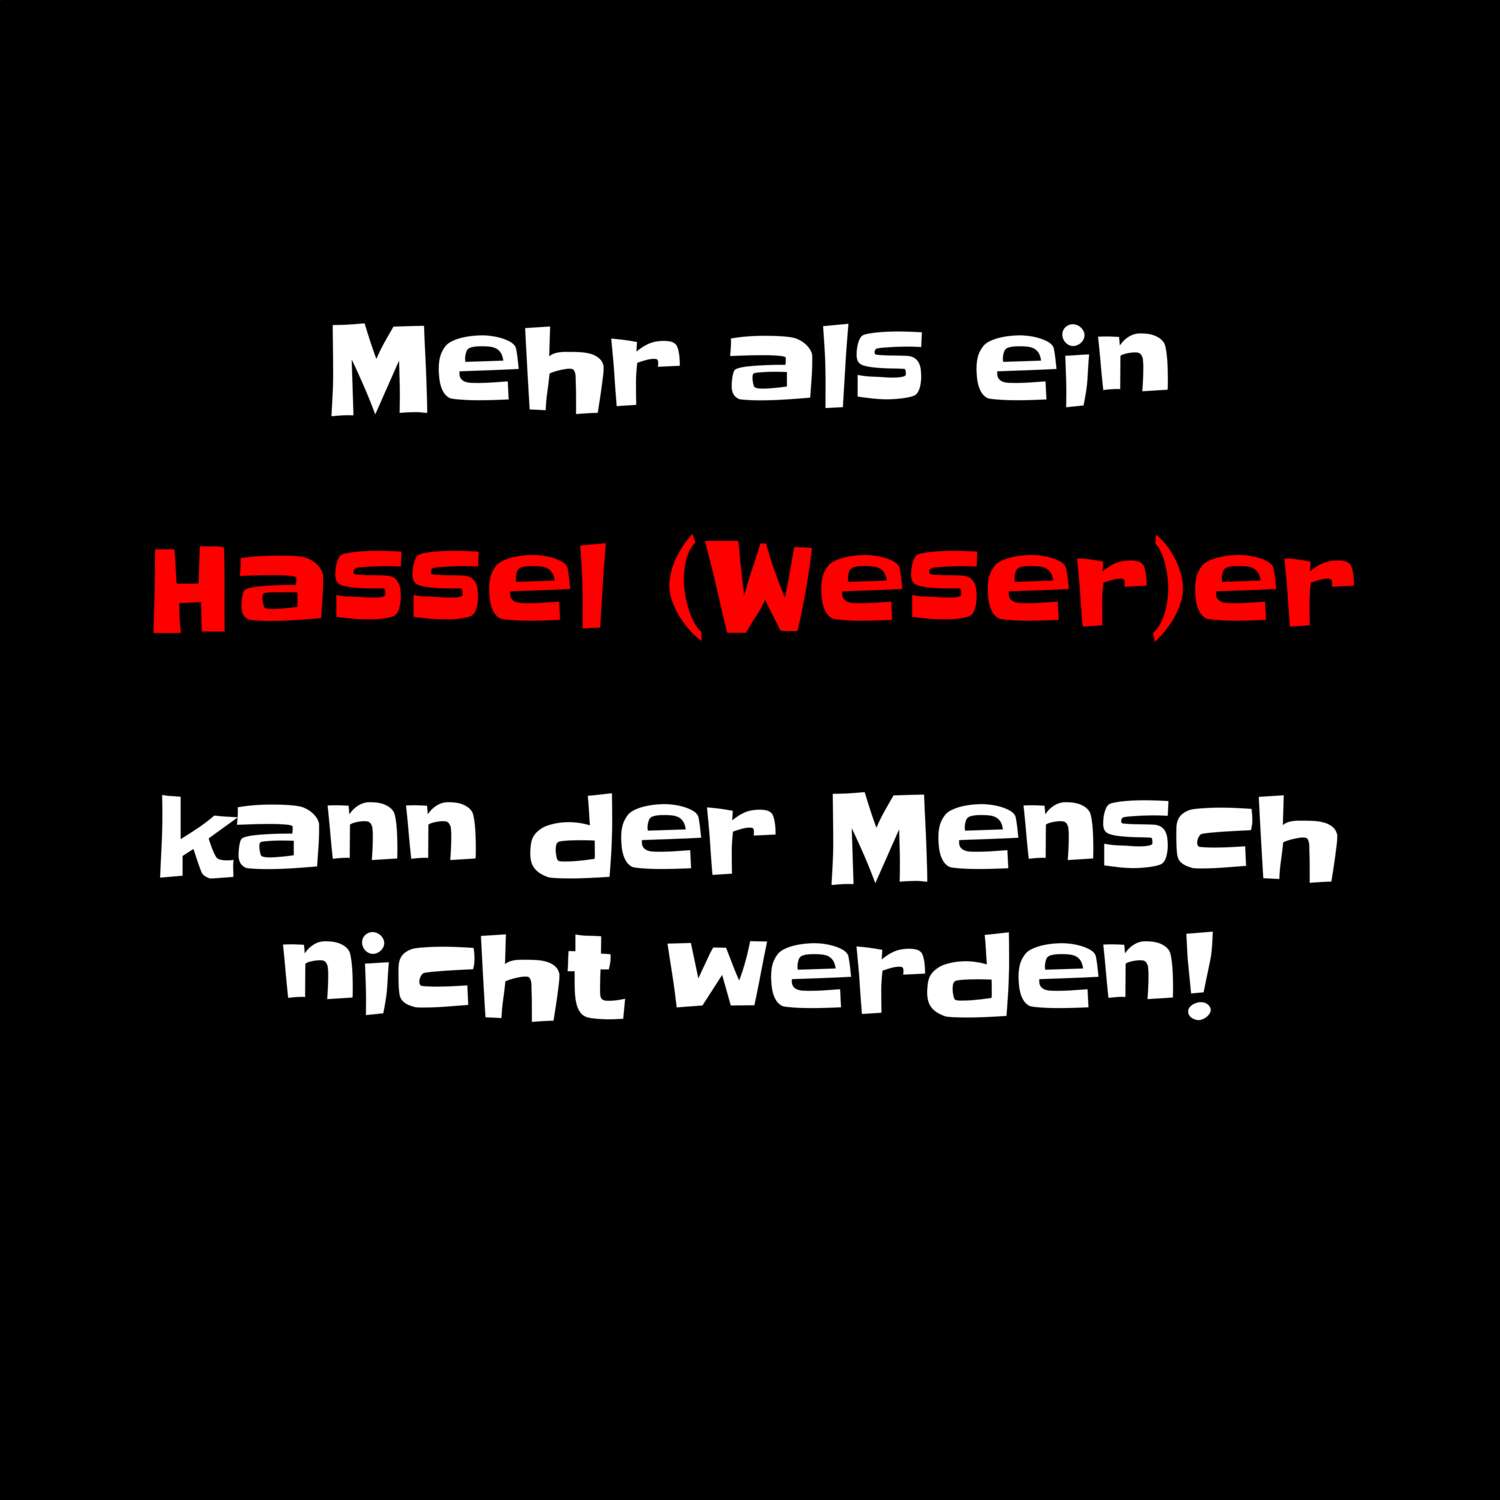 Hassel (Weser) T-Shirt »Mehr als ein«